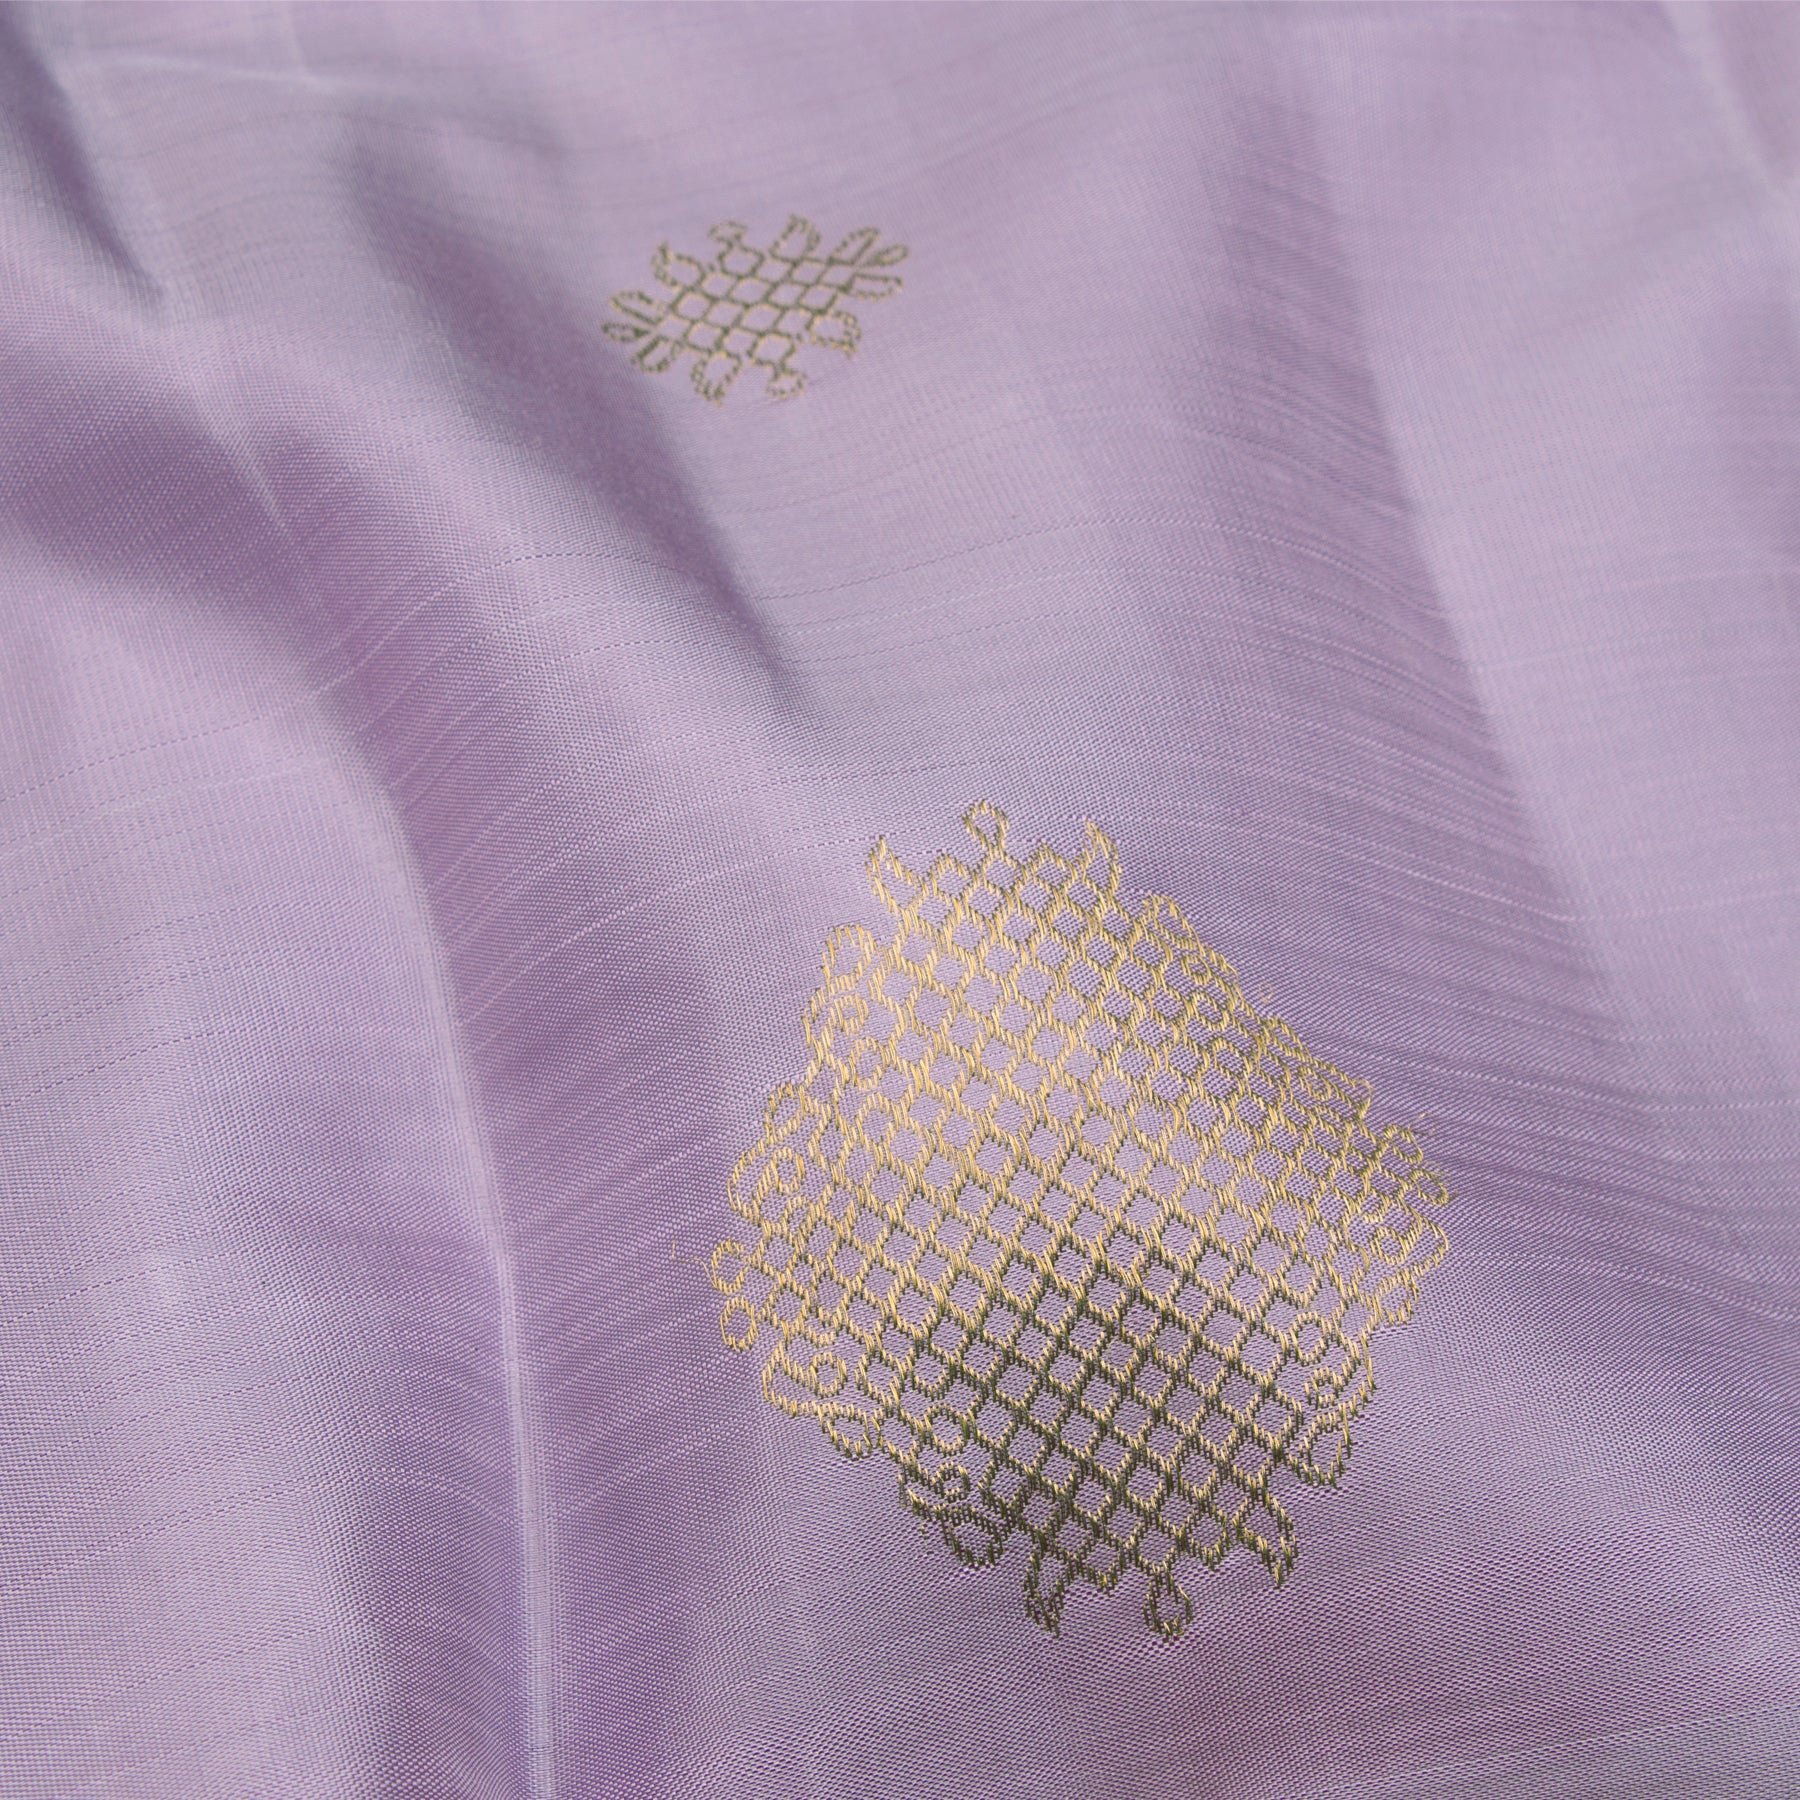 Kanakavalli Kanjivaram Silk Sari 23-595-HS001-03640 - Fabric View